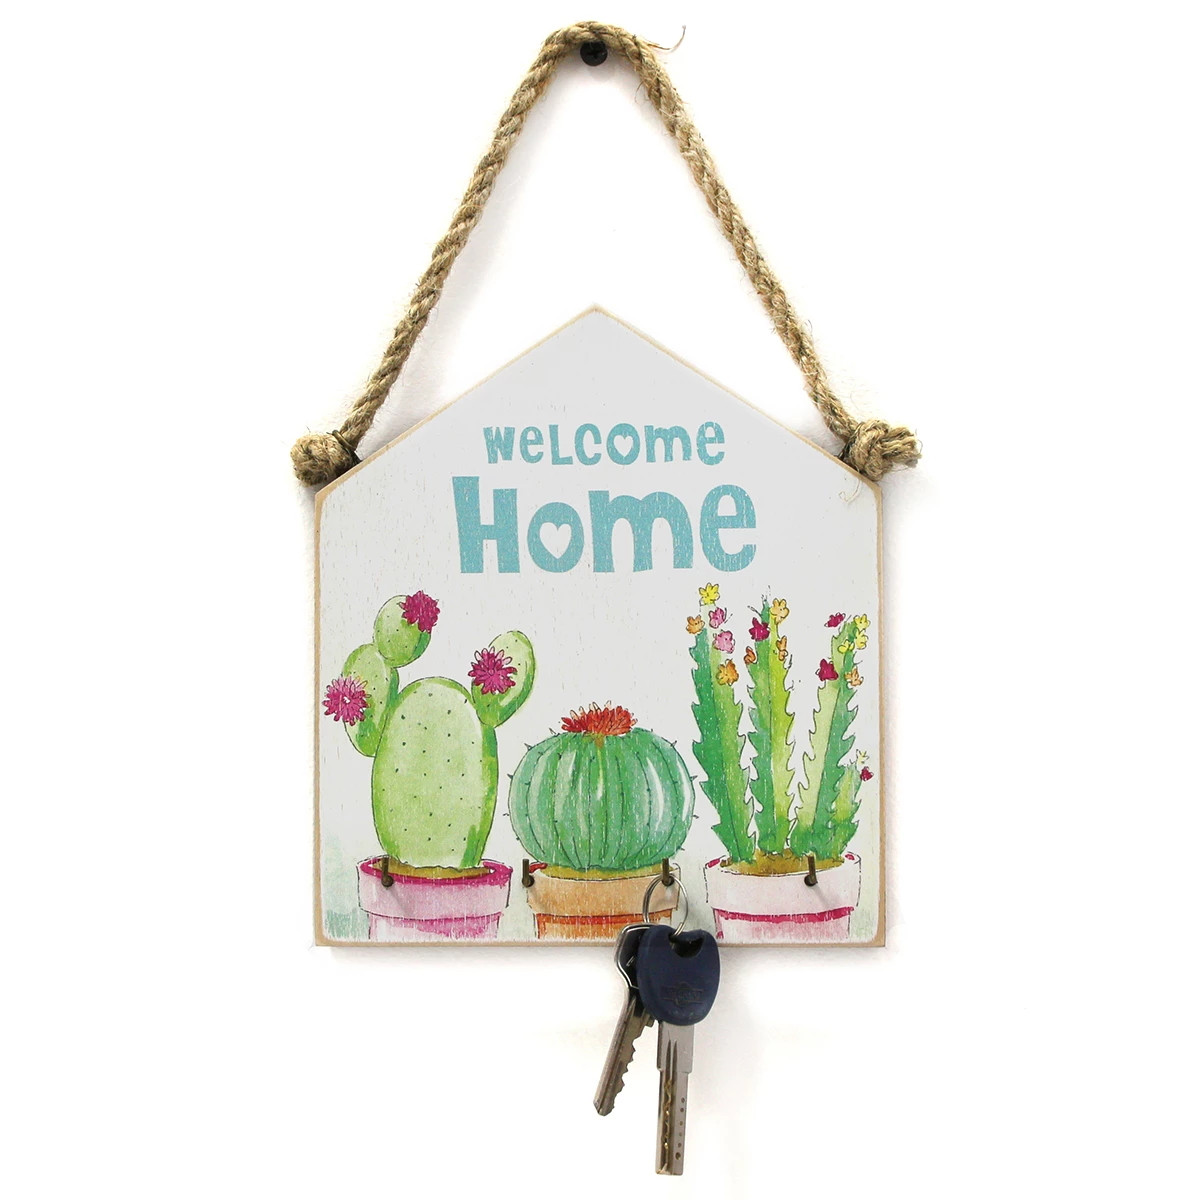 WIESZAK NA KLUCZE "Welcome home", kwitnące kaktusy